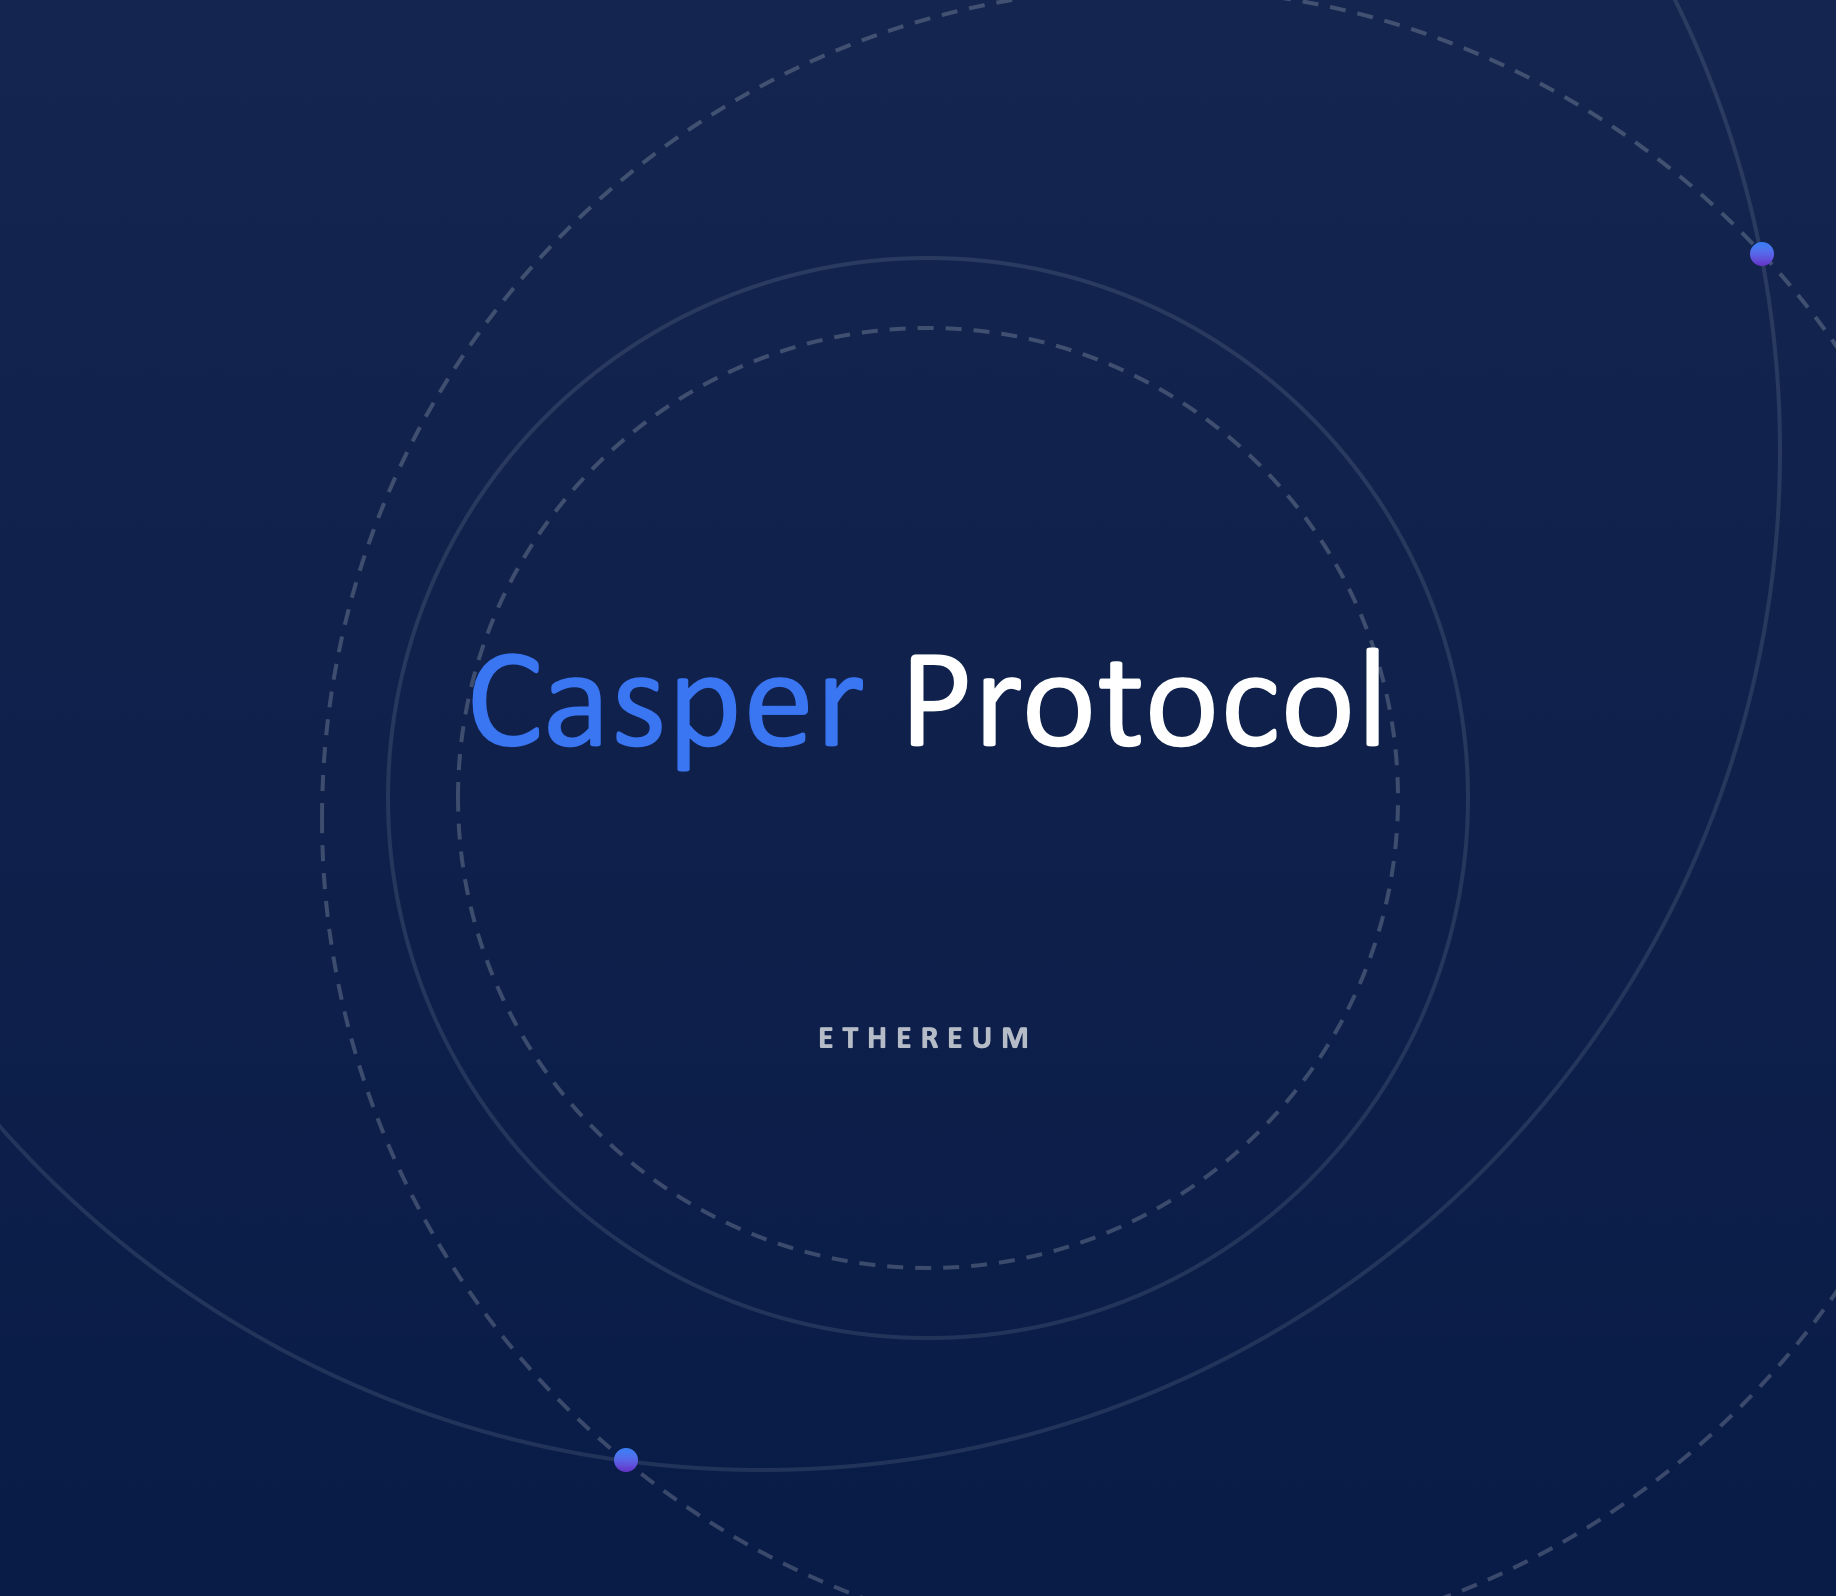 Casper Protocol